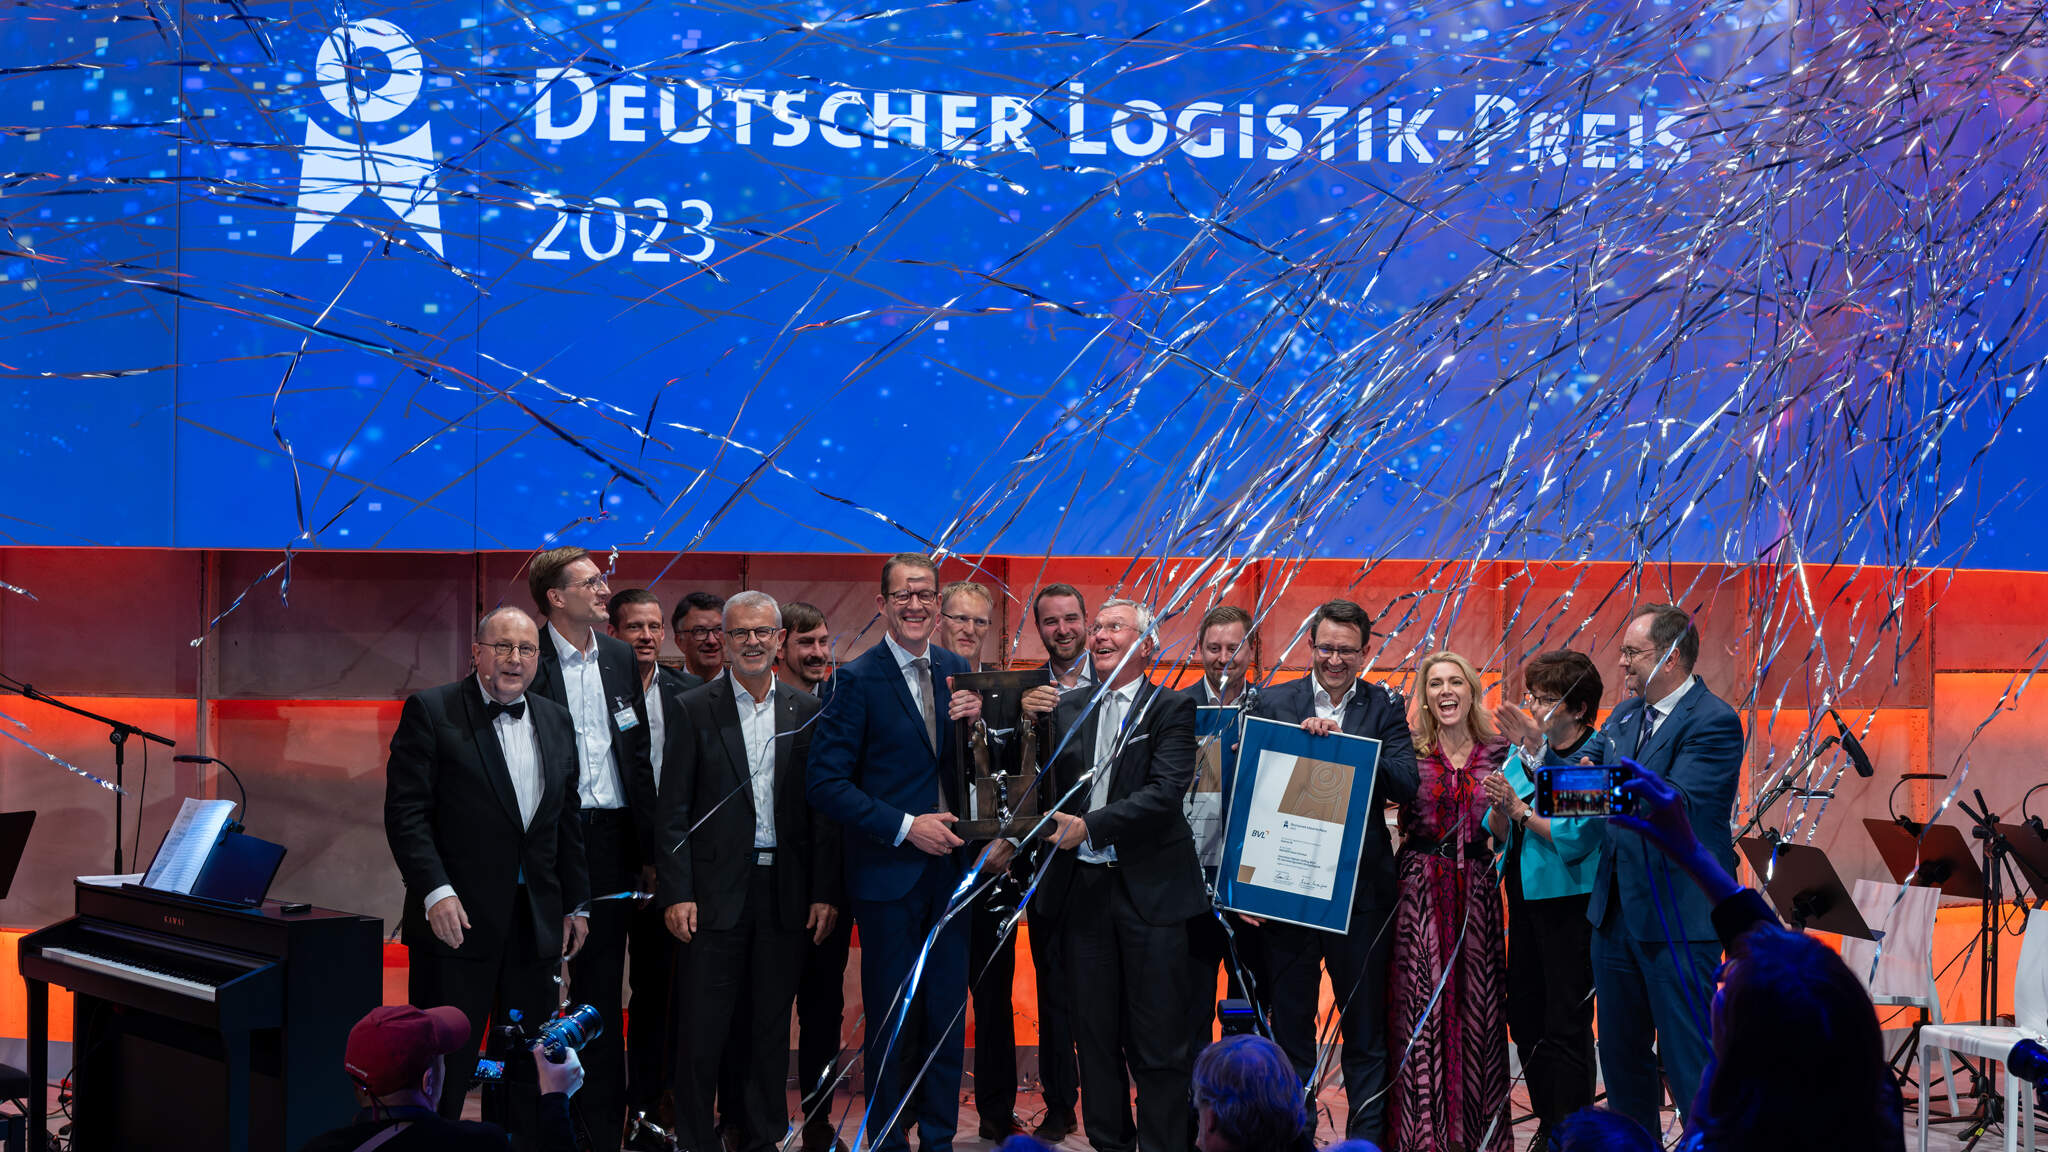 Le CEO de DACHSER, Burkhard Eling, et le Professeur Dr. Dr. h.c. Michael ten Hompel, Directeur général du Fraunhofer IML, ont accepté le German Logistics Award 2023 aux côtés des équipes de Fraunhofer IML et de DACHSER. Photo : BVL/Bublitz